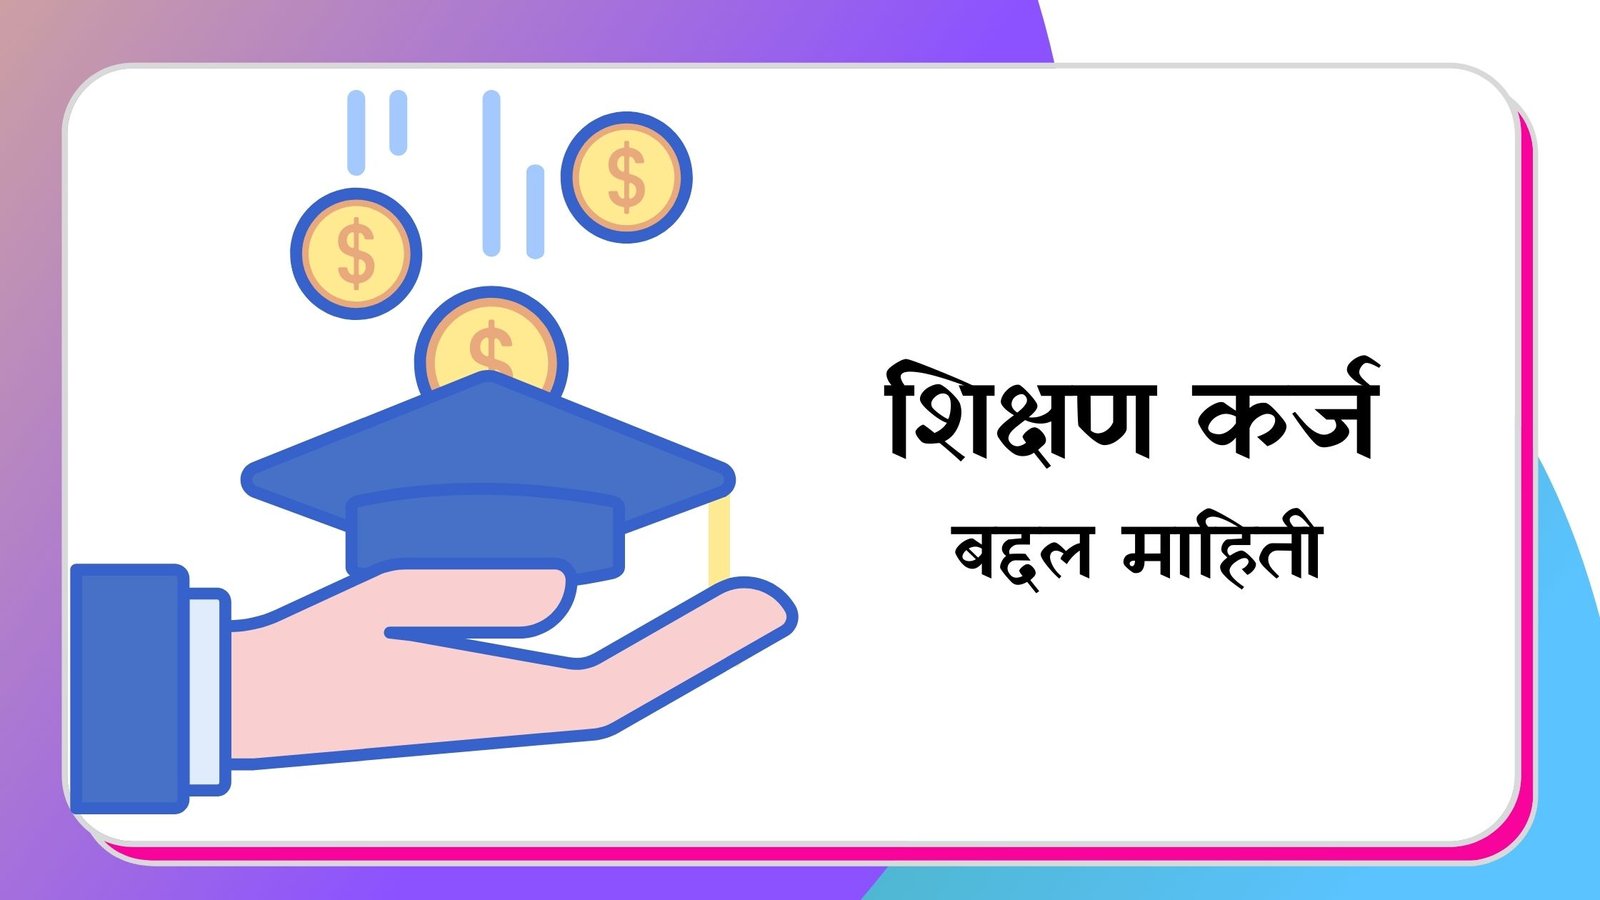 Education loan information in marathi